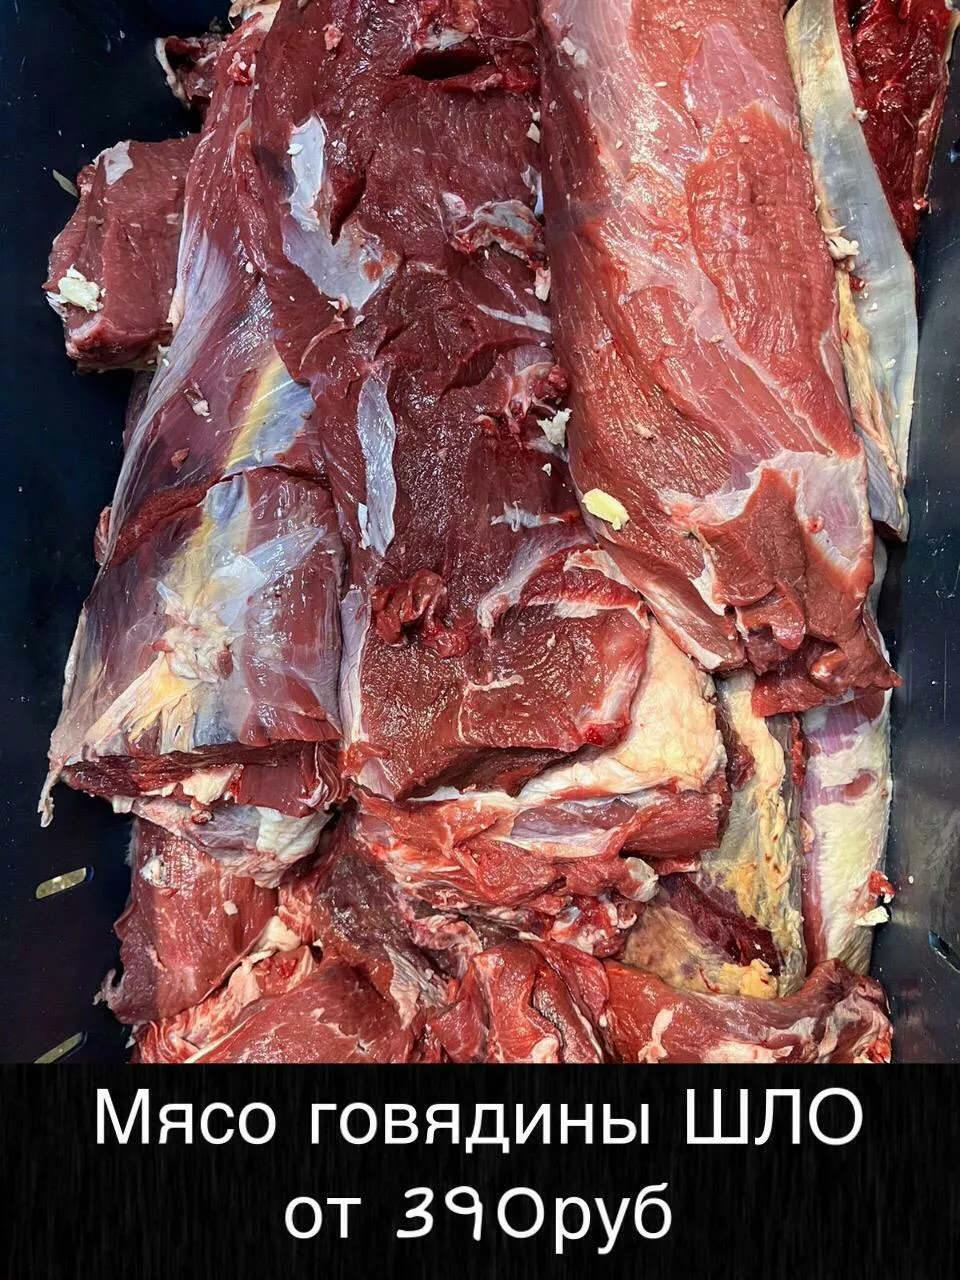 Фотография продукта Мясо оптом доставка красноярск бесплатно